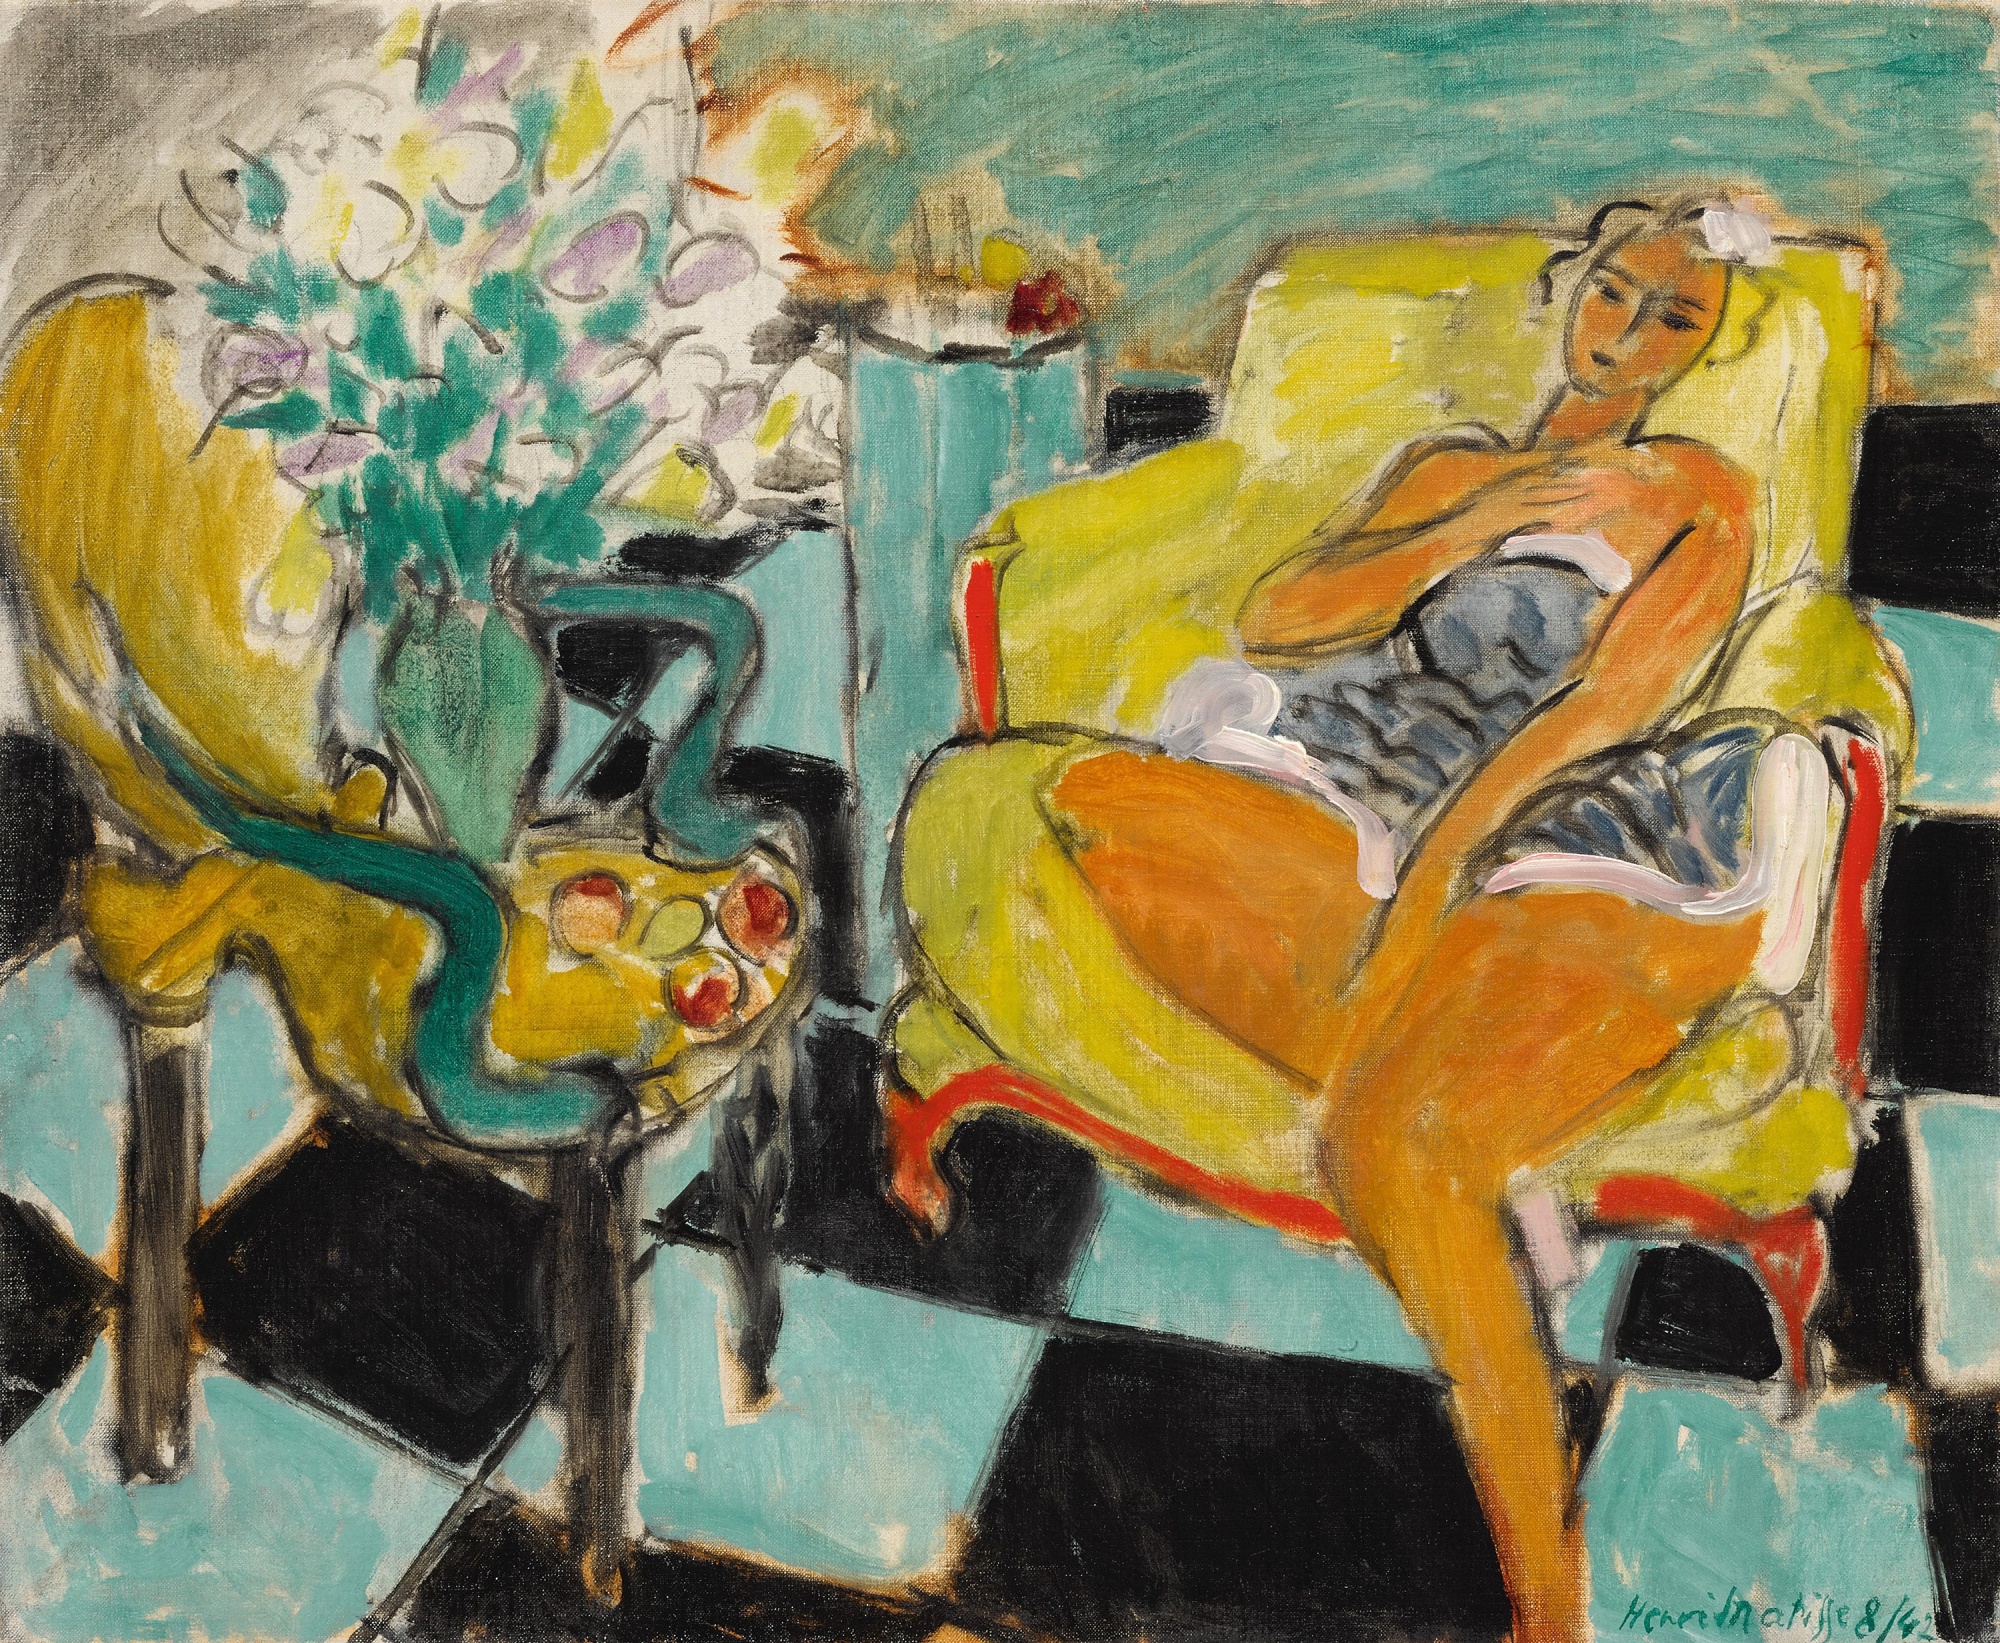 “Danseuse dans un interieur, carrelage vert et noir,” by Henri Matisse